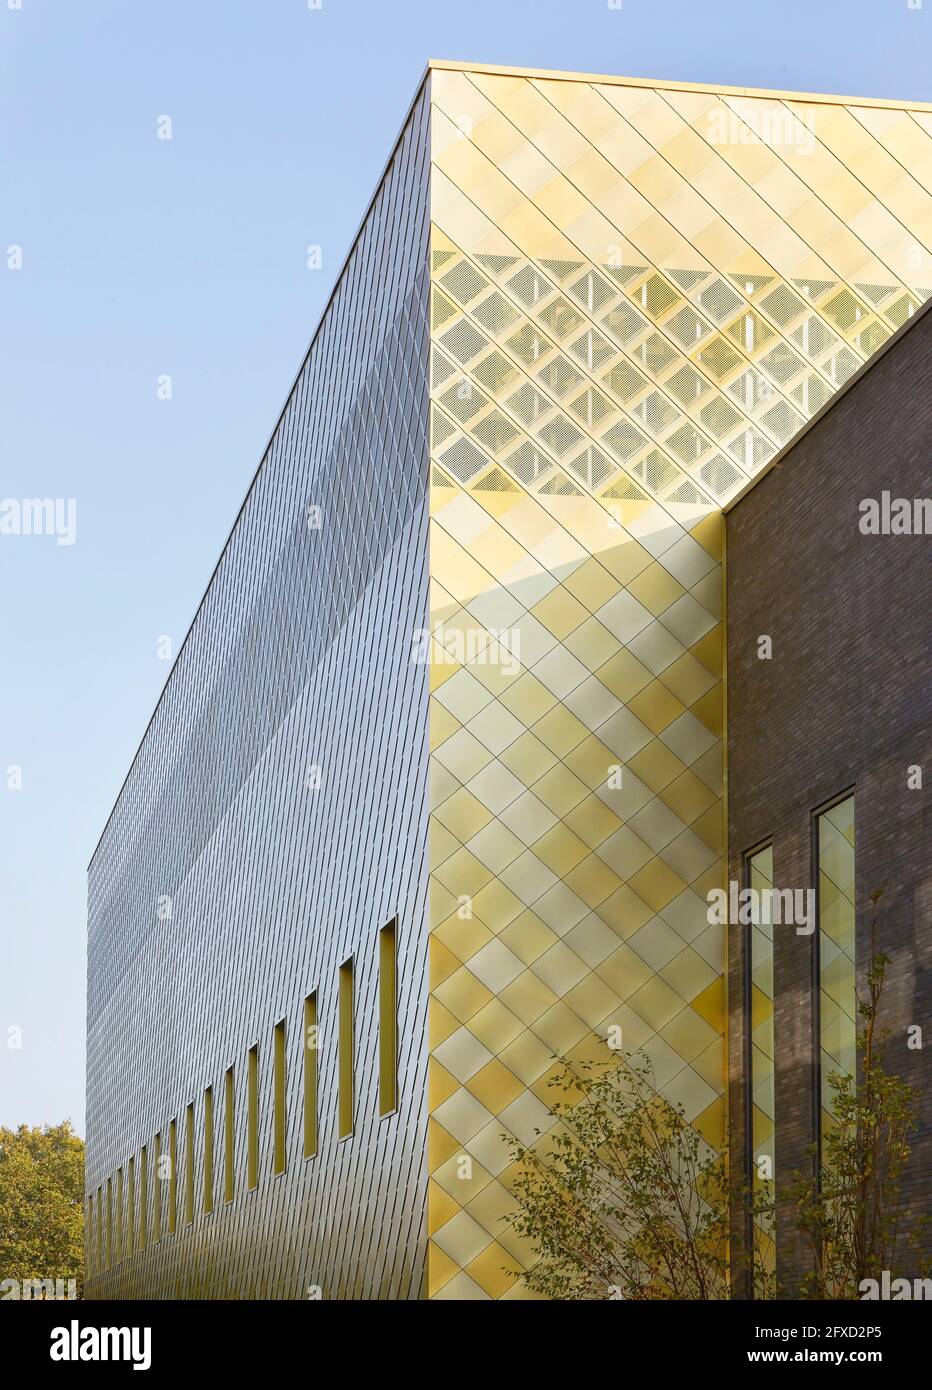 Dettaglio della facciata. Università di Birmingham, Collaborative Teaching Laboratory, Birmingham, Regno Unito. Architetto: Sheppard Robson, 2018. Foto Stock